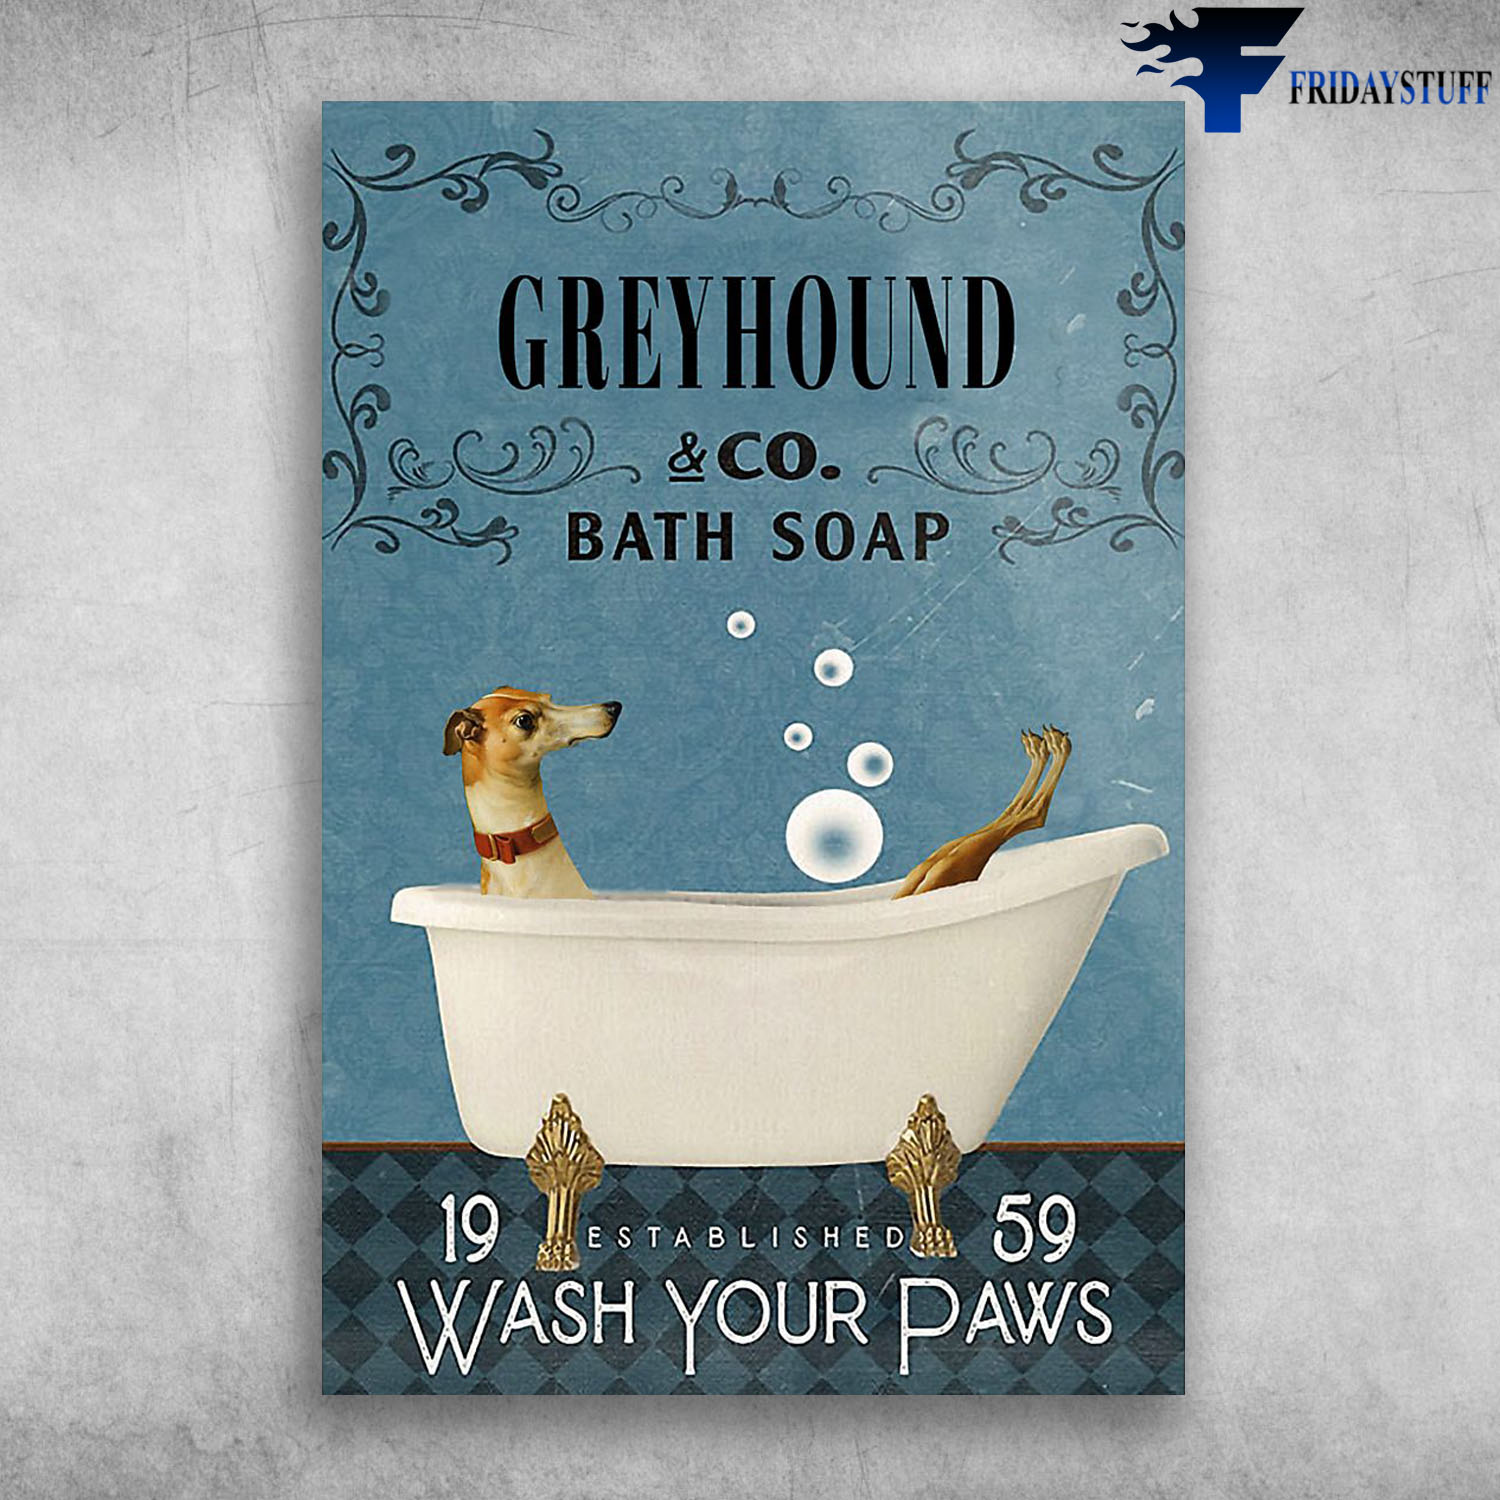 Greyhound In Bathtub Bath Soap Established Wash Your Paws